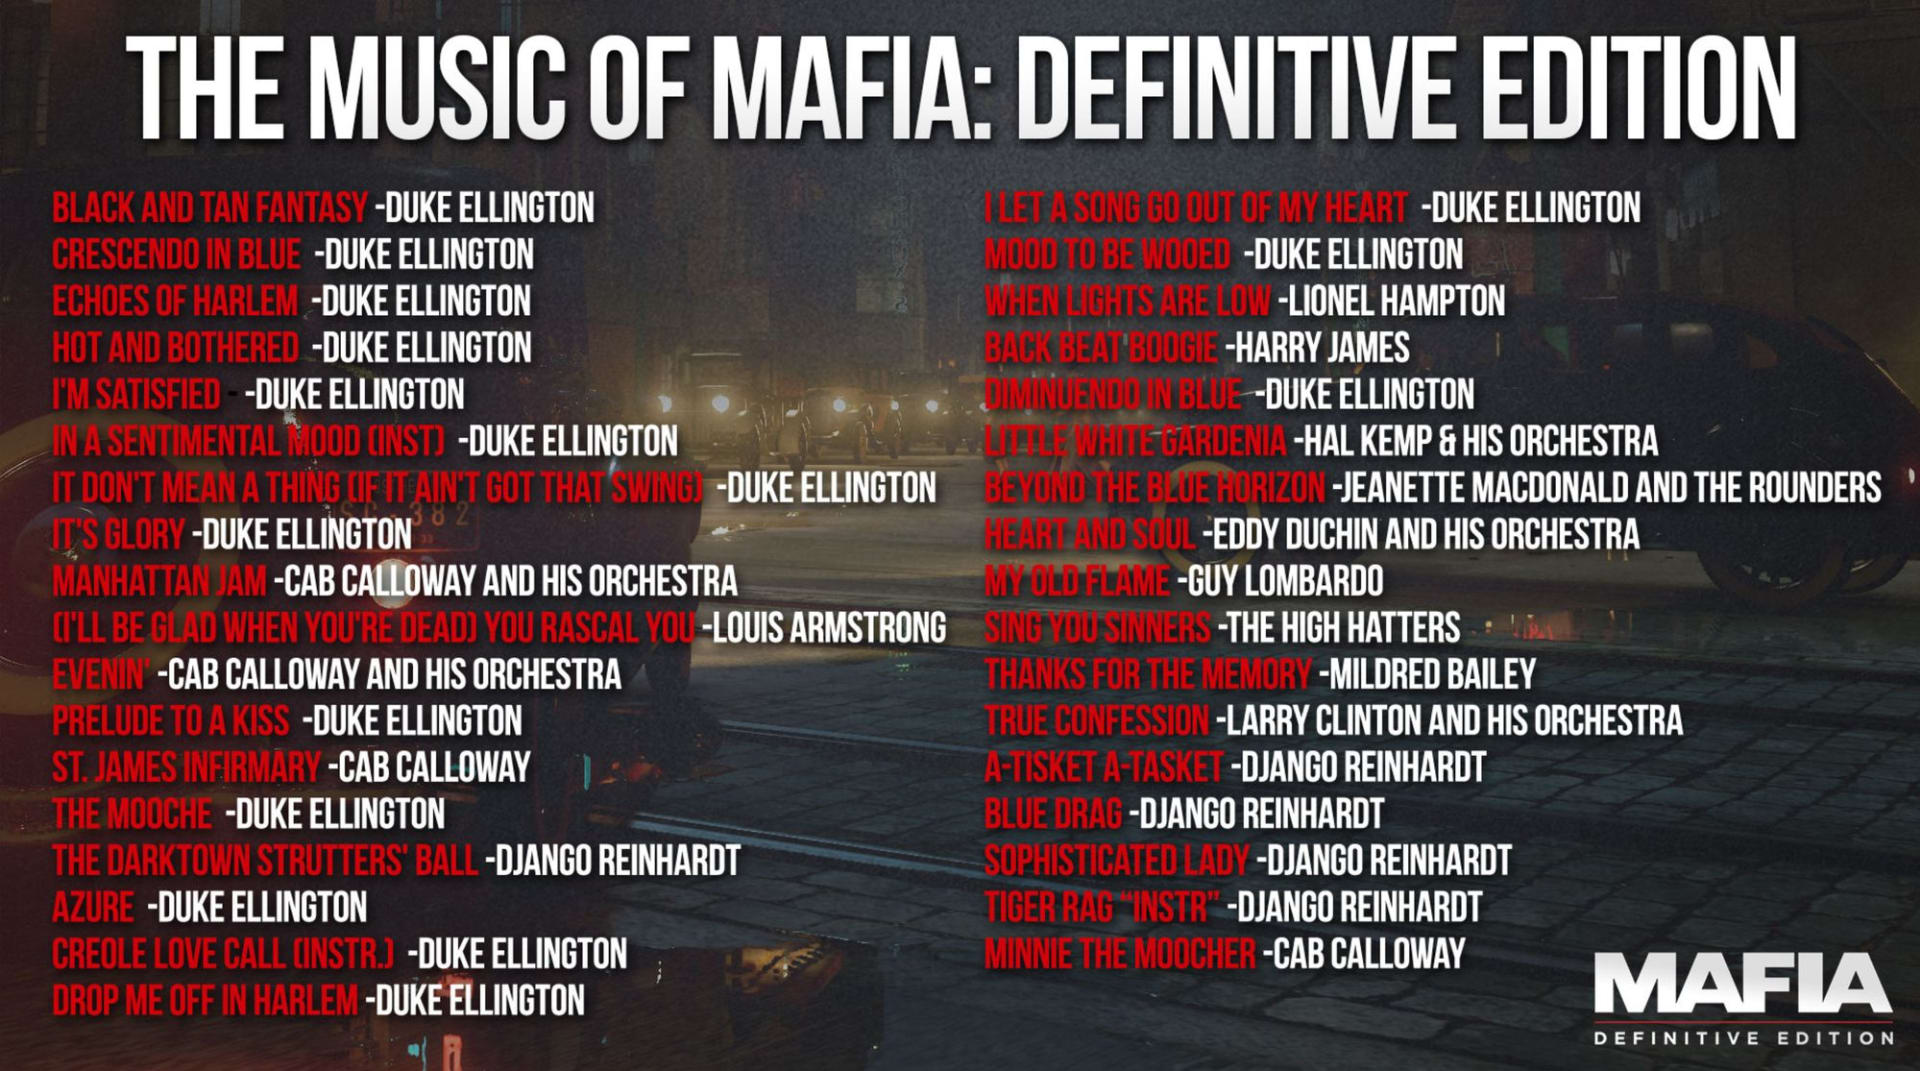 Seznam hudby použité v Mafia: Definitive Edition